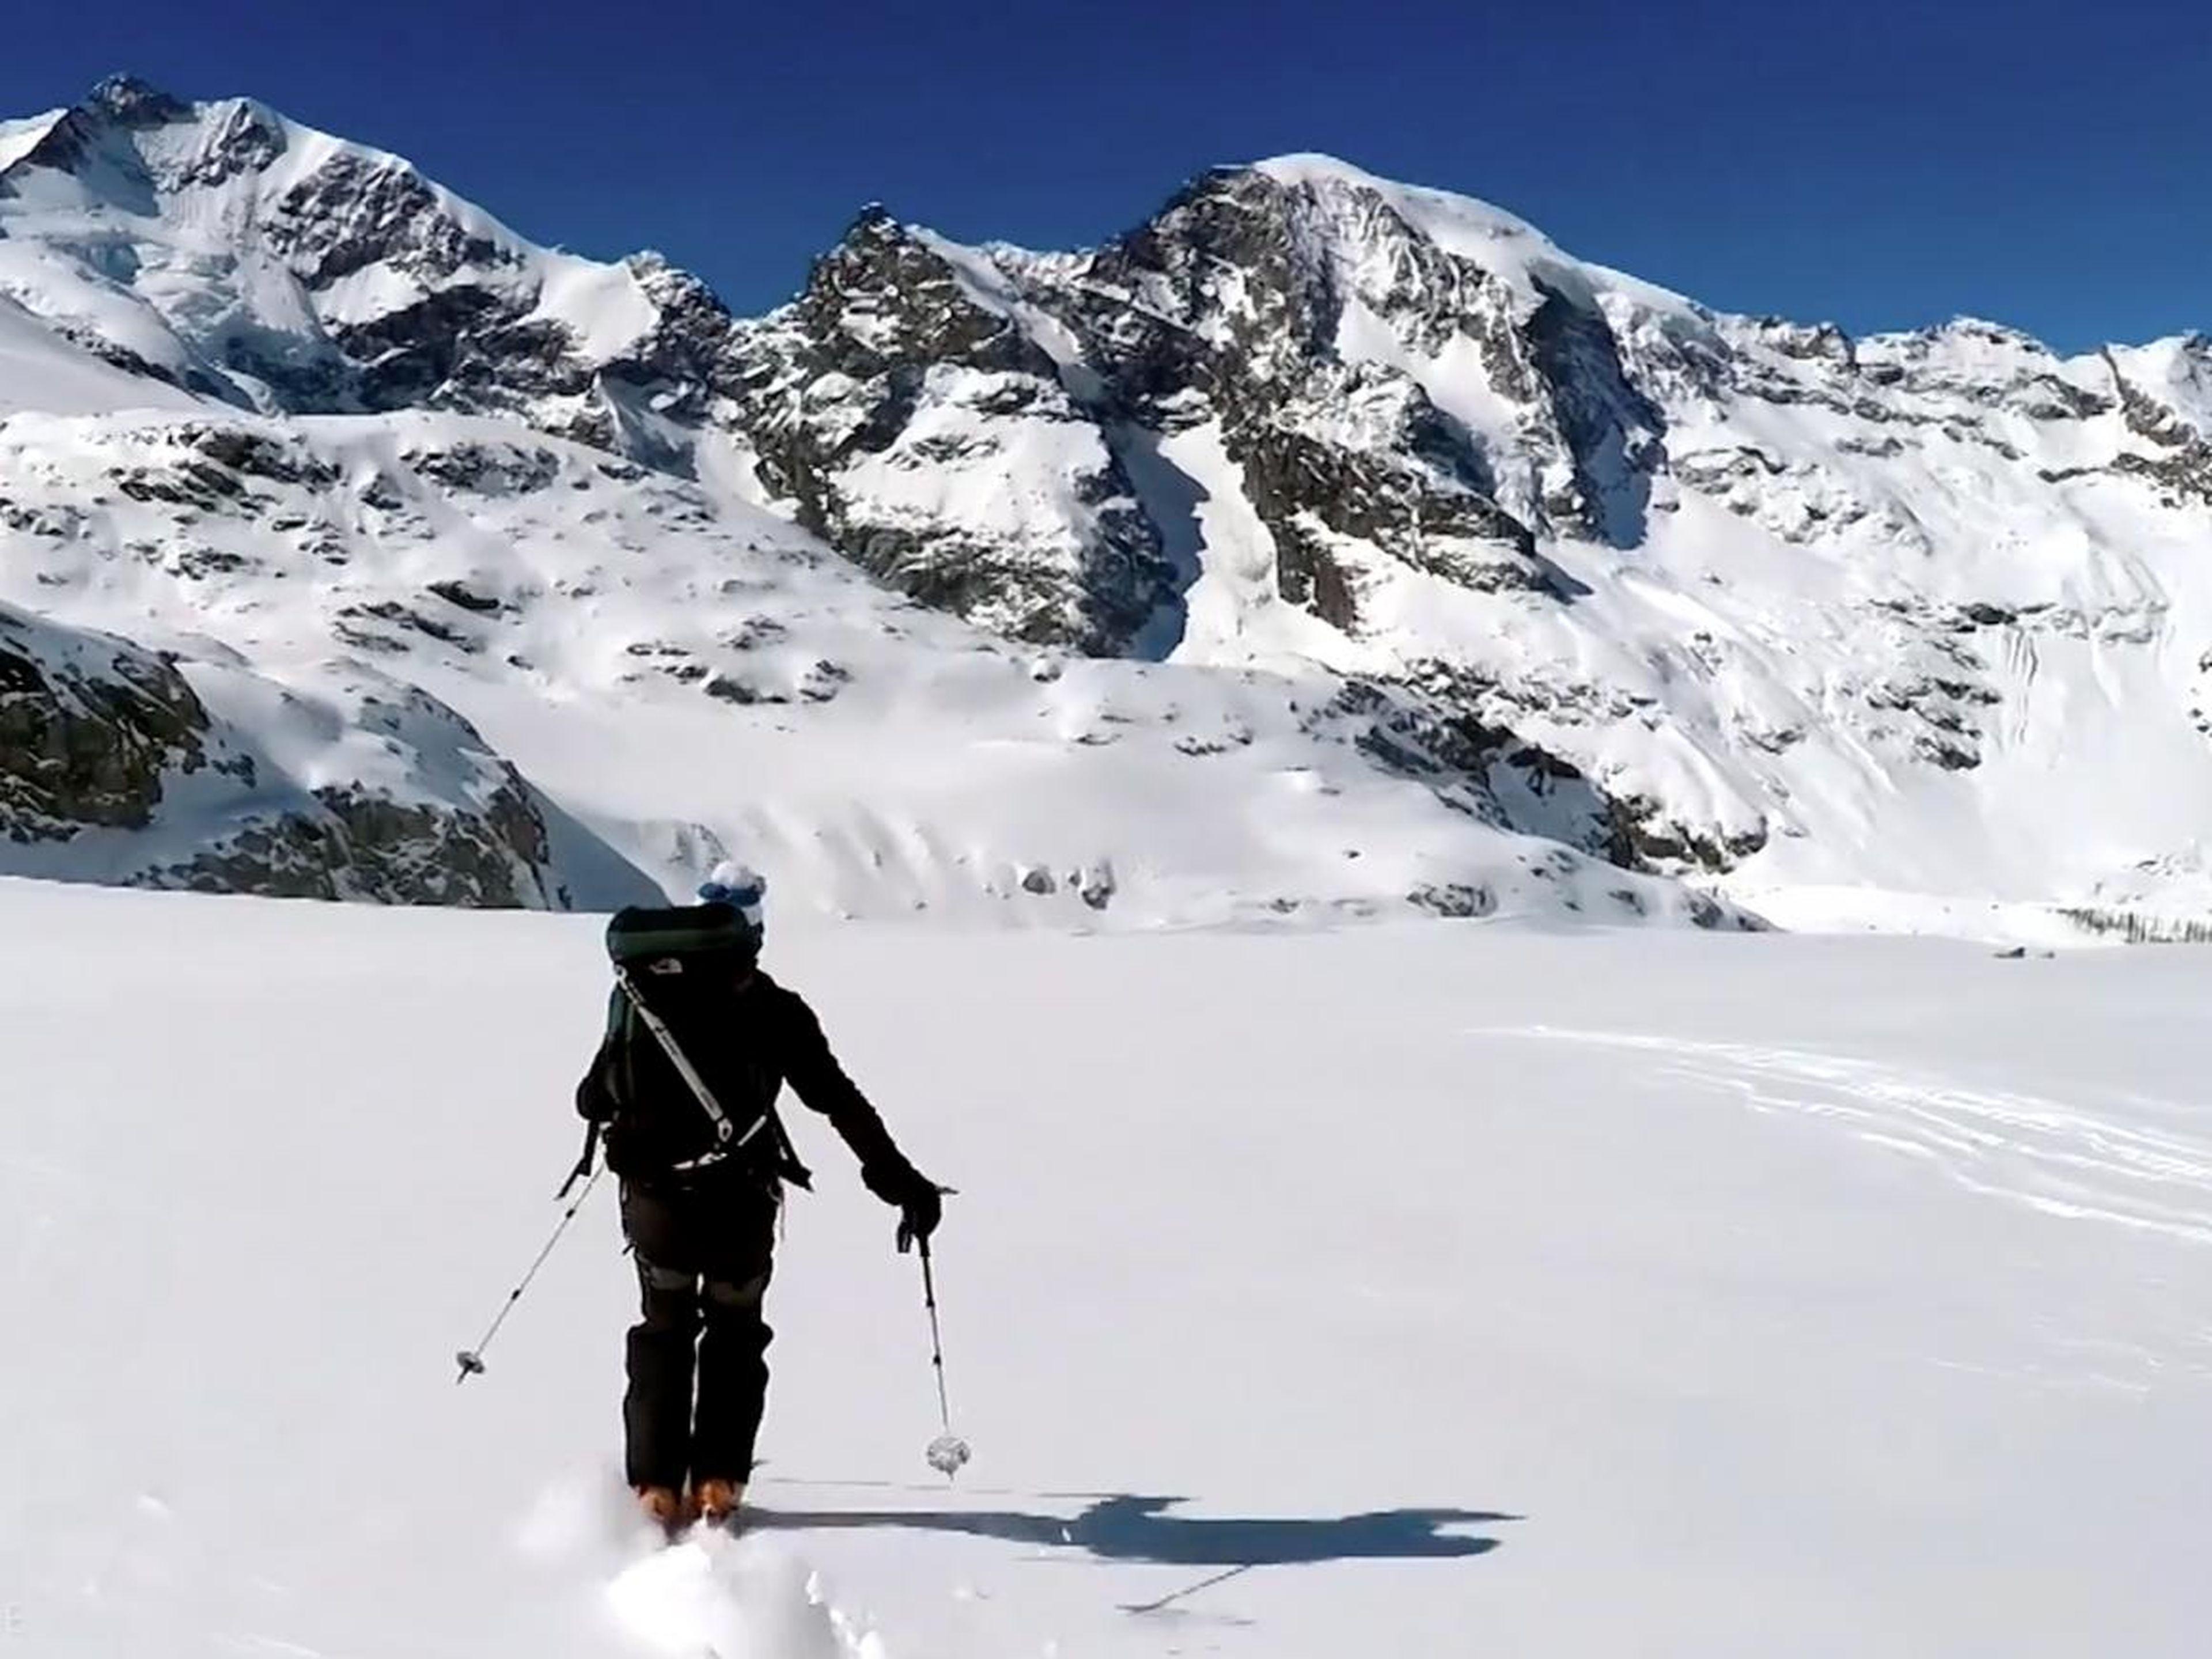 Los propietarios pueden esquiar dentro y fuera a través de un ascensor privado para acceder a las laderas empolvadas de los Alpes suizos